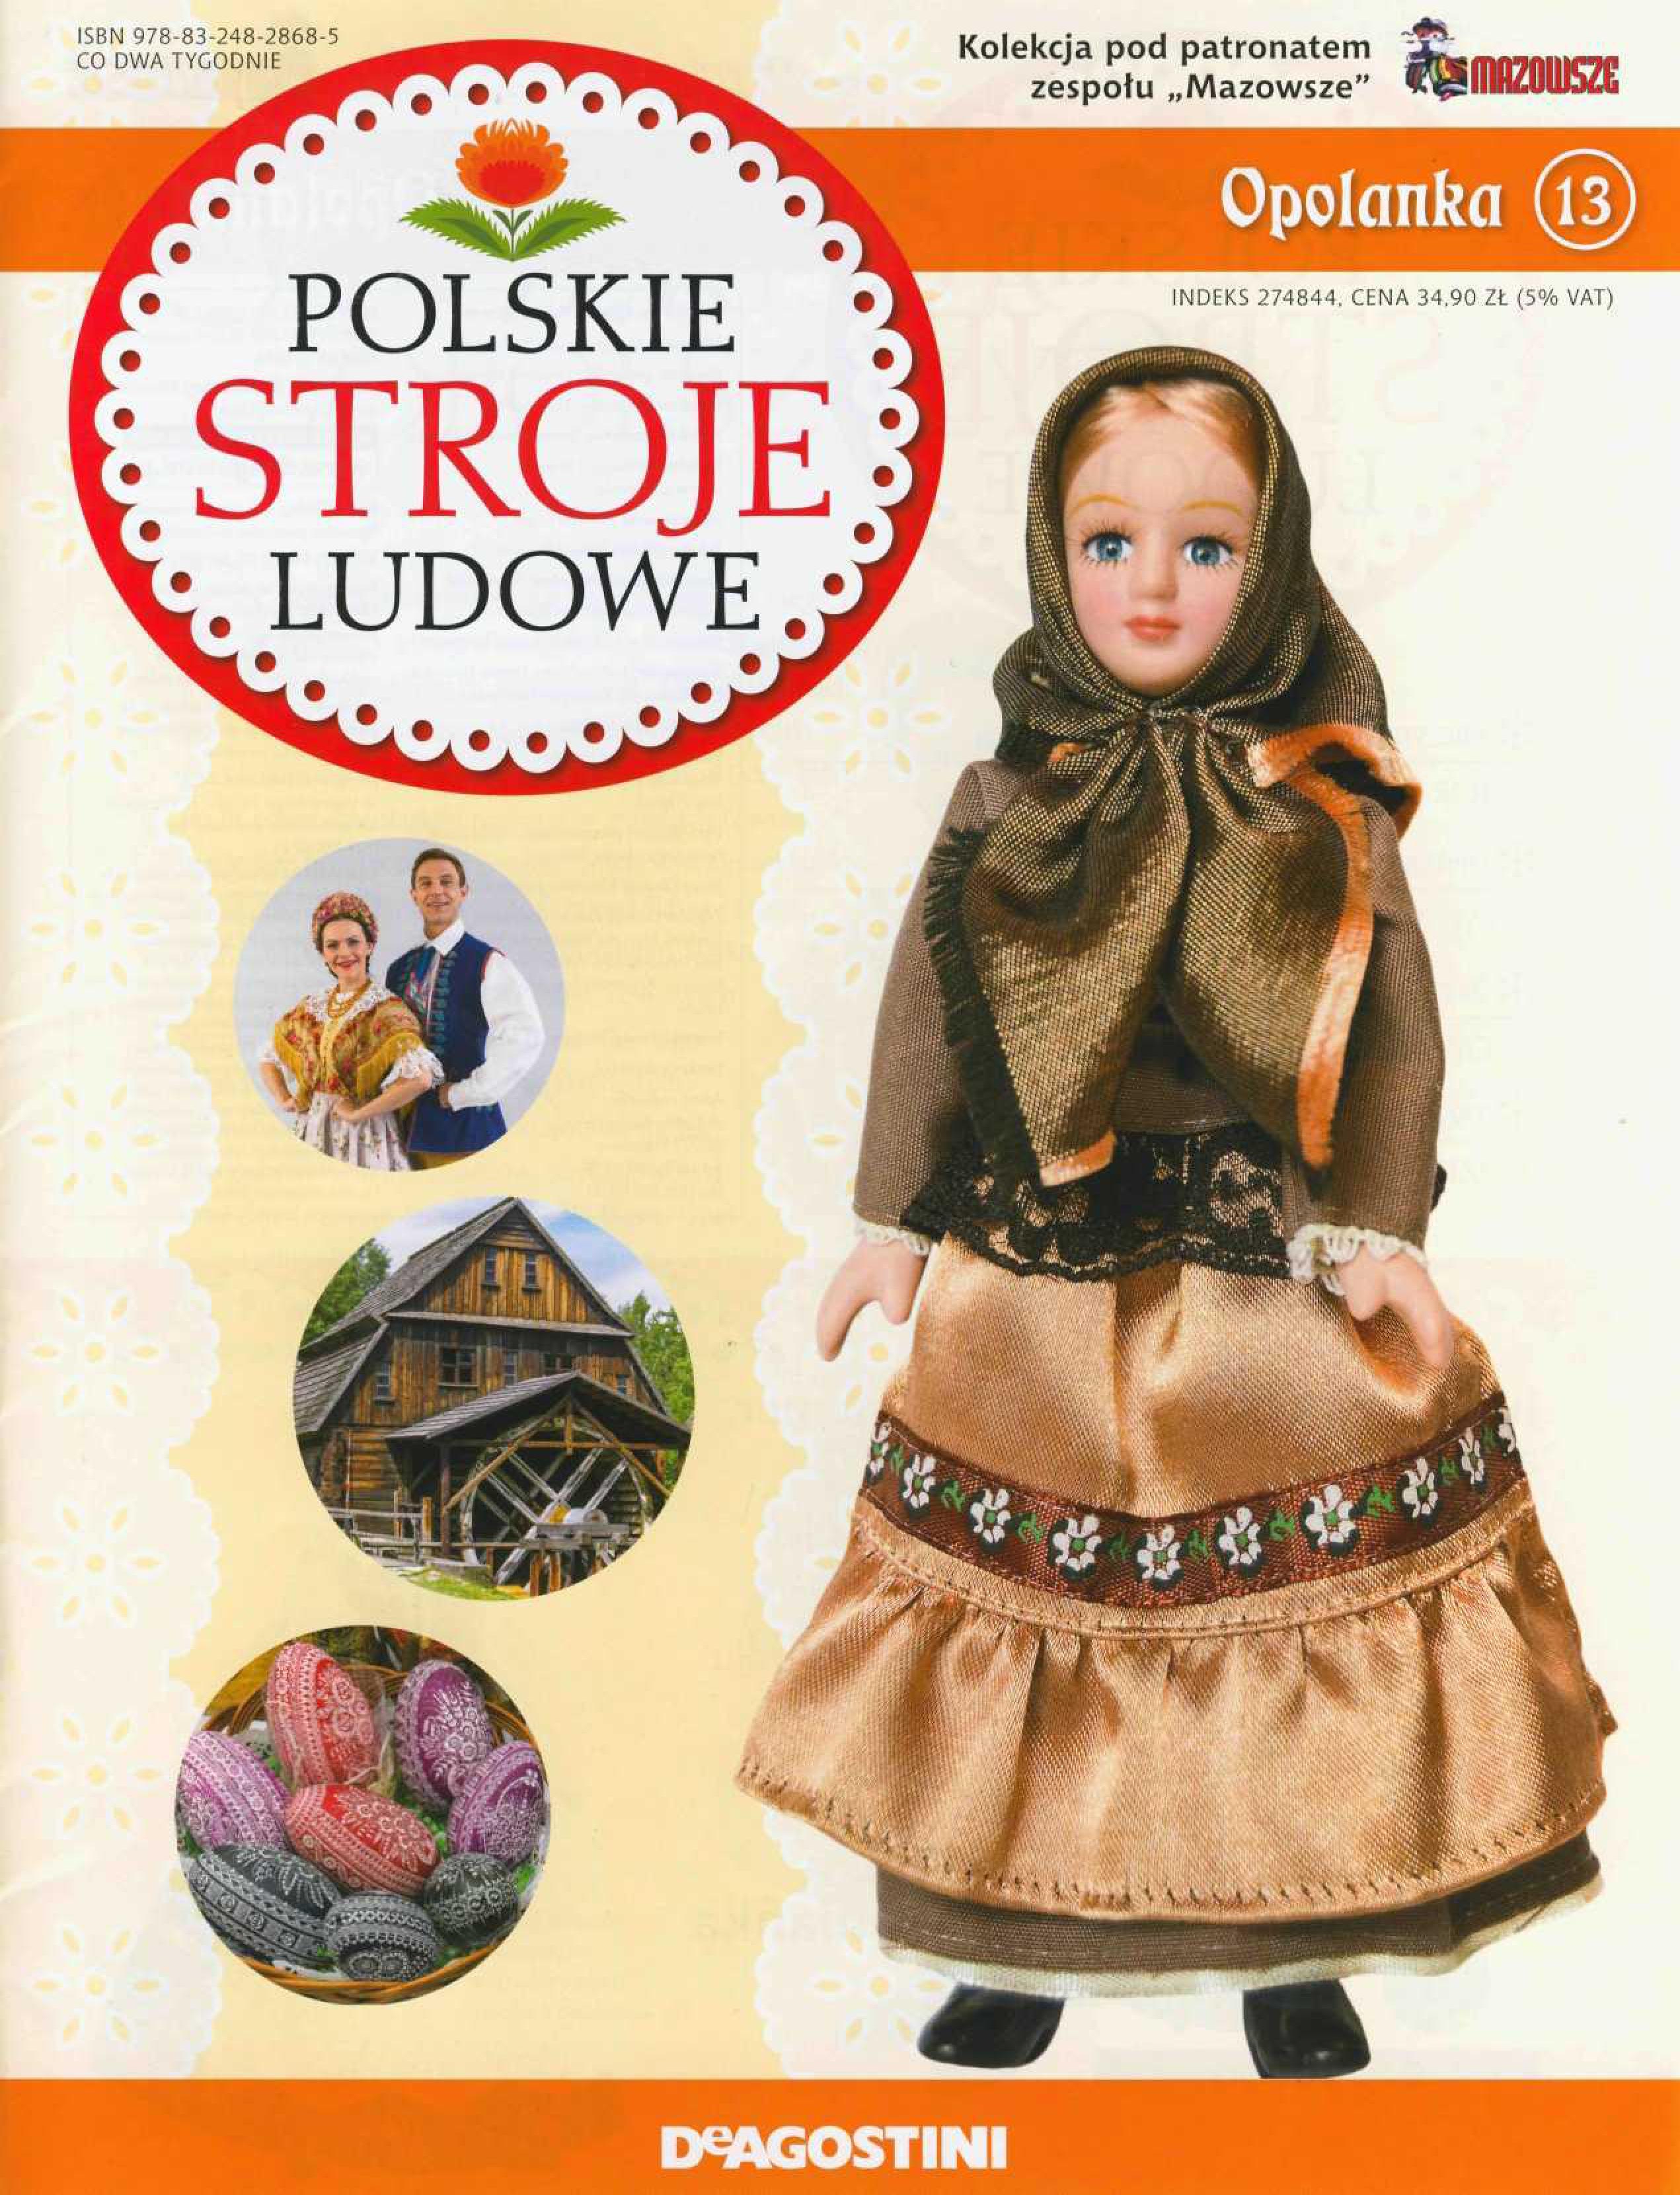 Polskie Stroje Ludowe №013 - Opolanka-1